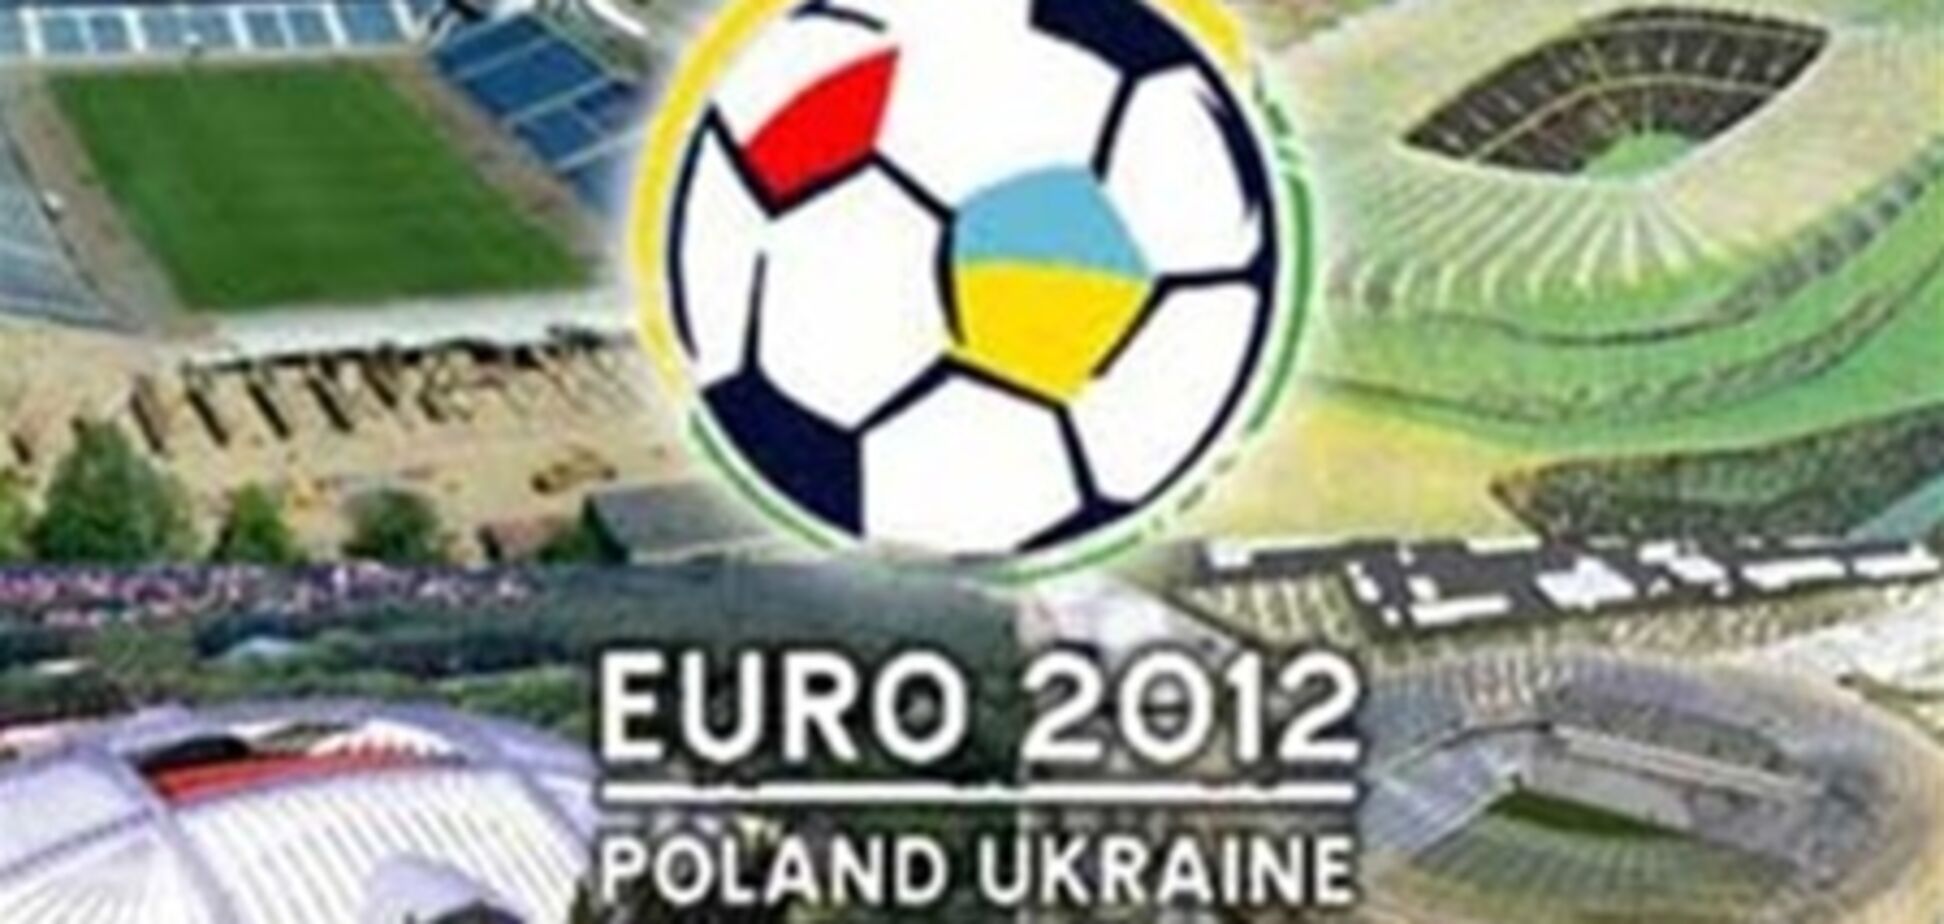 Фанов Евро-2012 поселят по экономценам